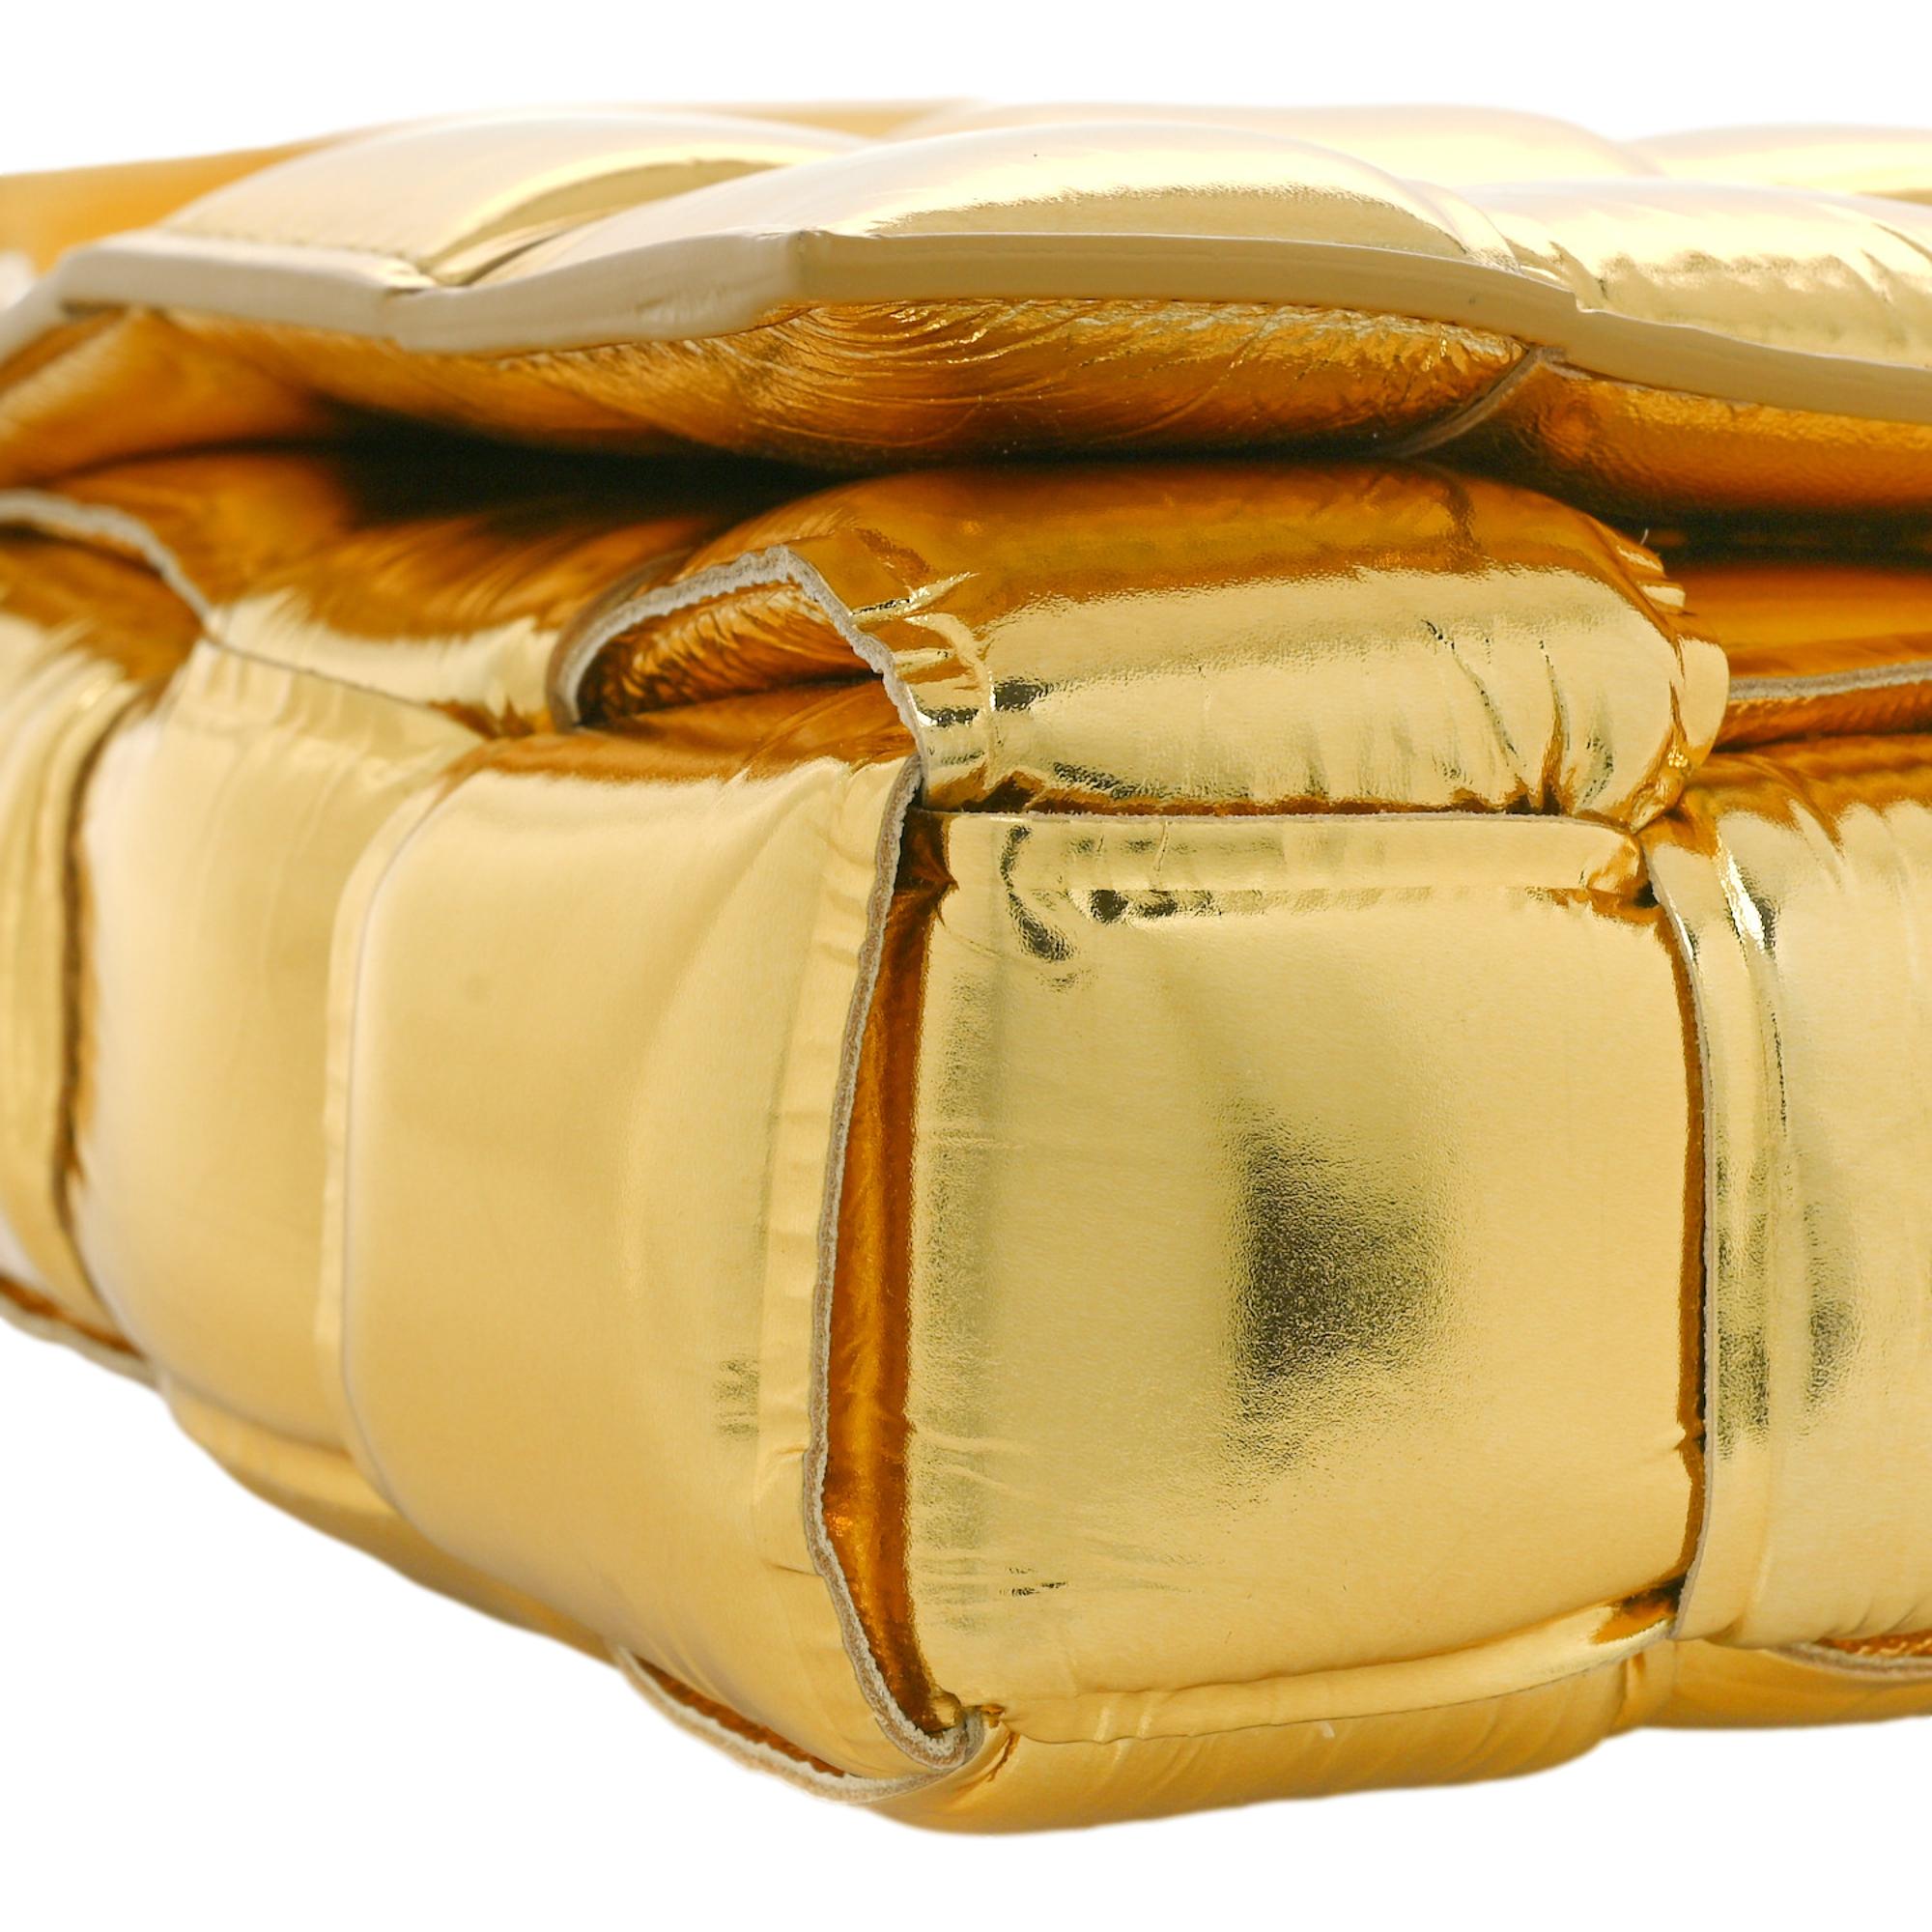 Сумка через плечо Bottega Veneta с мягкой подкладкой Cassette из кожи ягненка цвета металлик и золотистого цвета